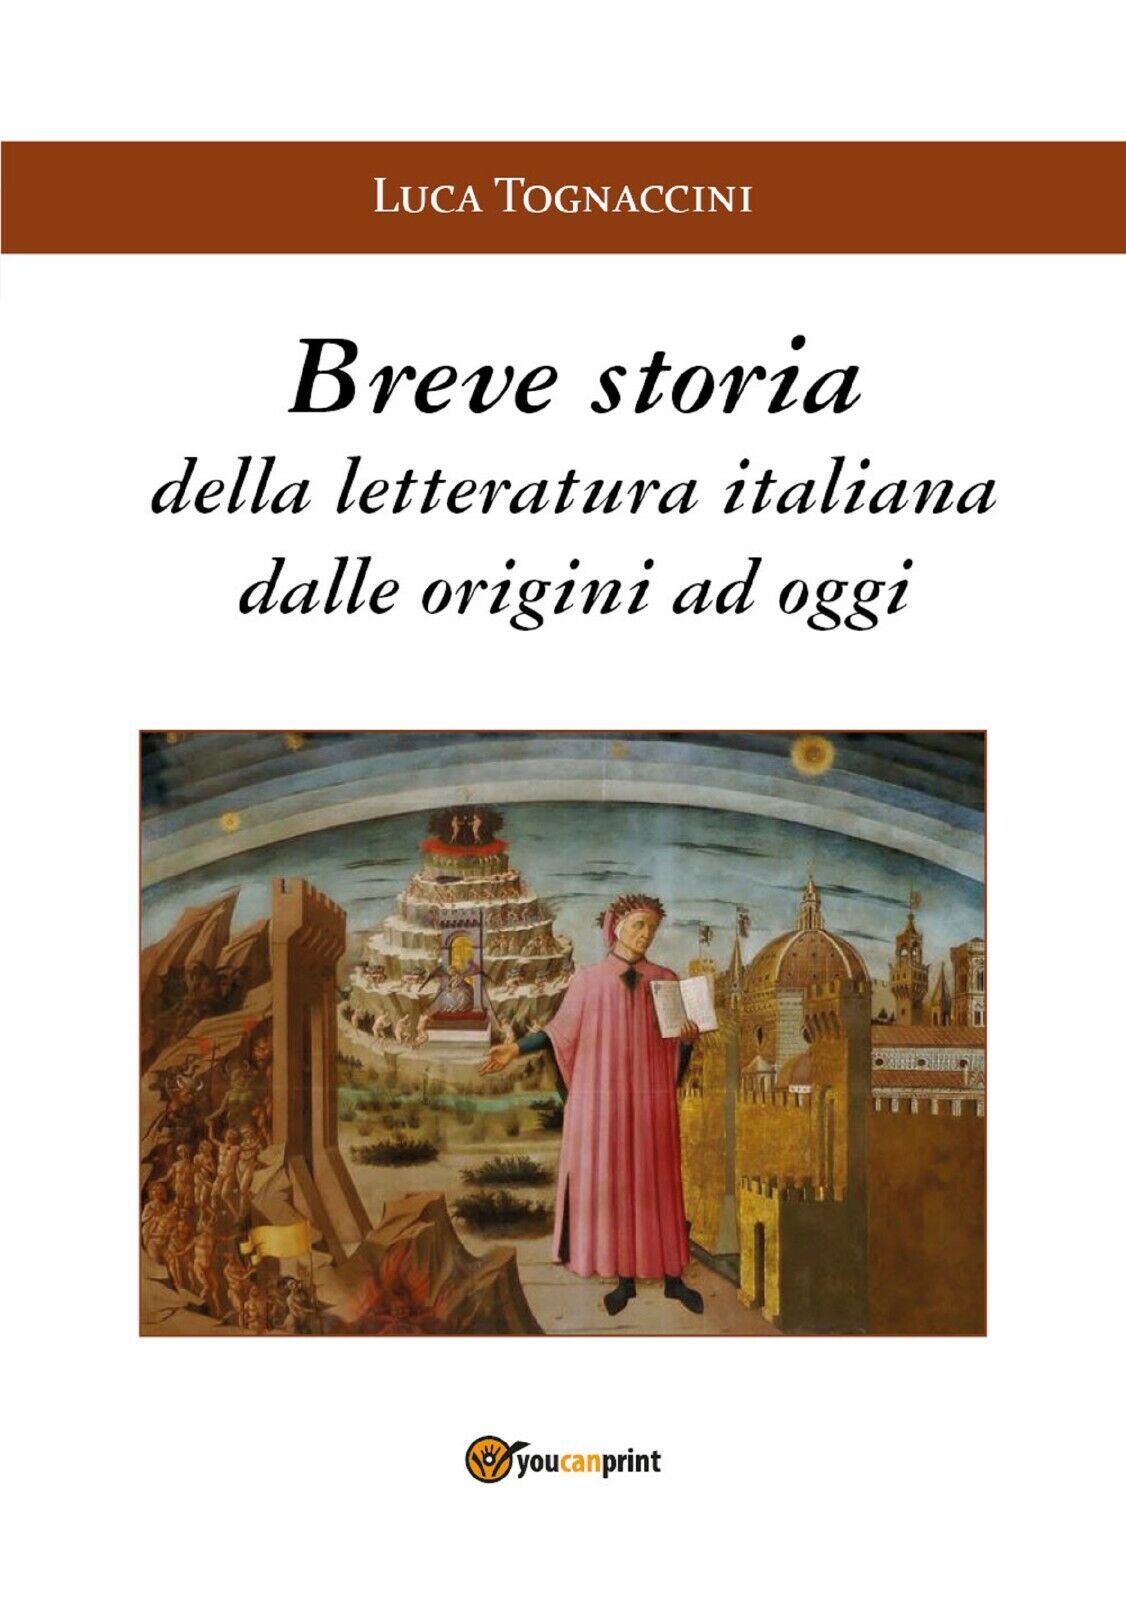 Breve storia della letteratura italiana dalle origini a oggi di Luca Tognaccini, libro usato